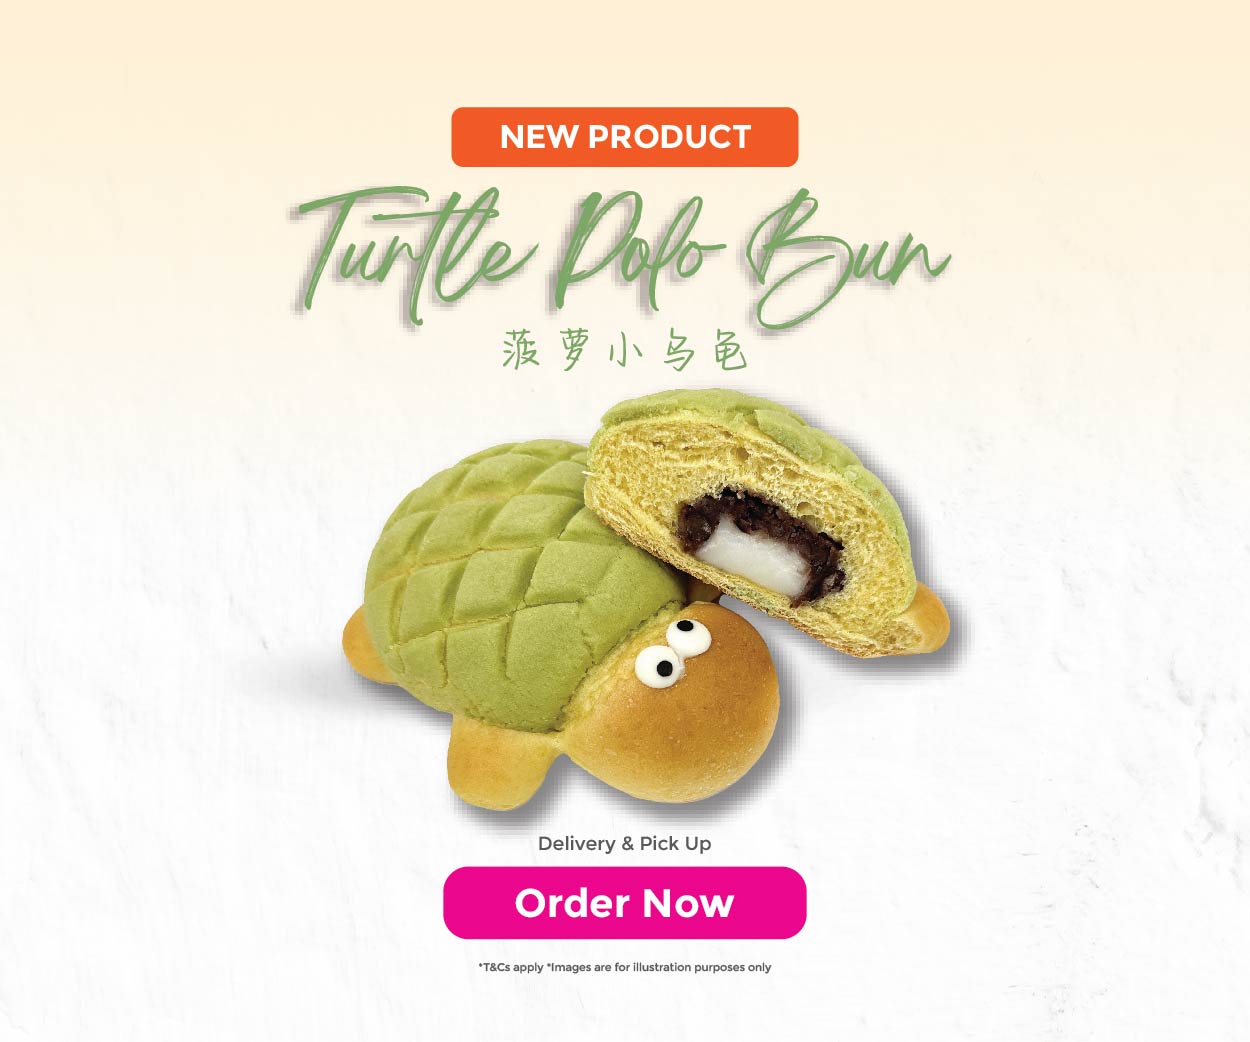 Turtle Polo Bun web banner mobile-01